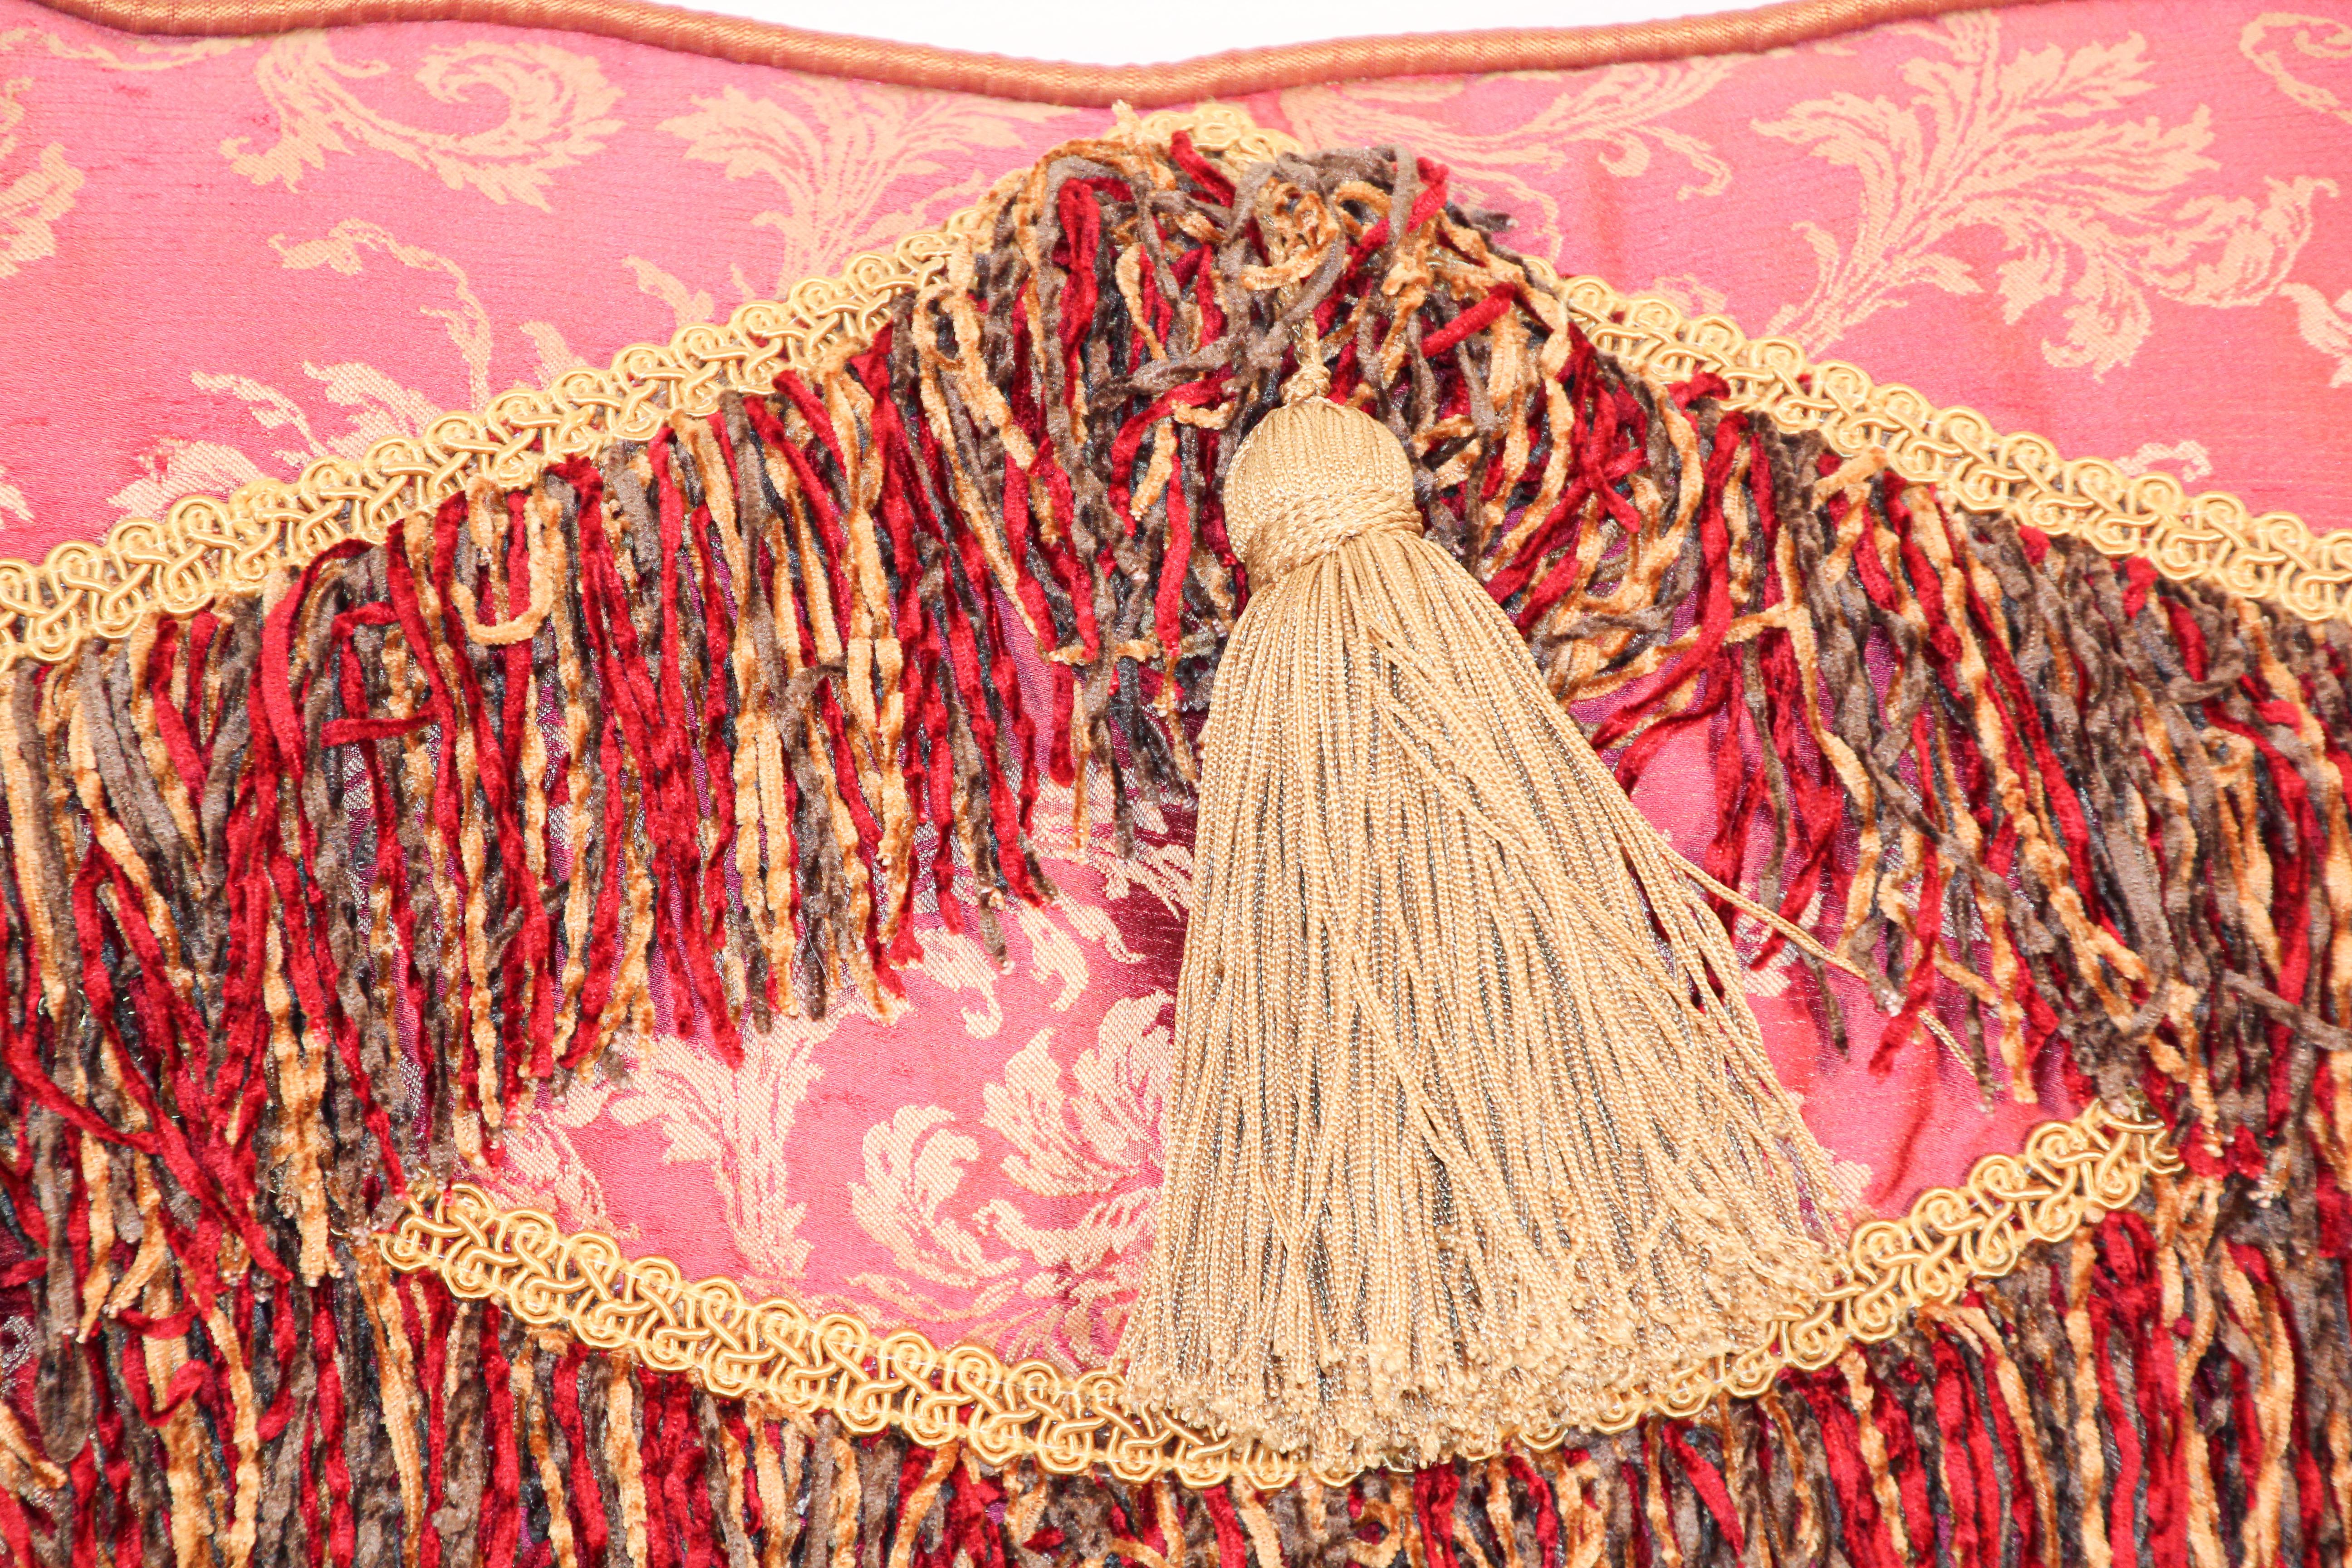 Nahöstliche dekorative Kissen mit Fransen und Quasten.
Luxuriöse Seide in Rot und Gold mit einem Textilakzent und einer dekorativen Seidenborte als Abschluss der Kanten.